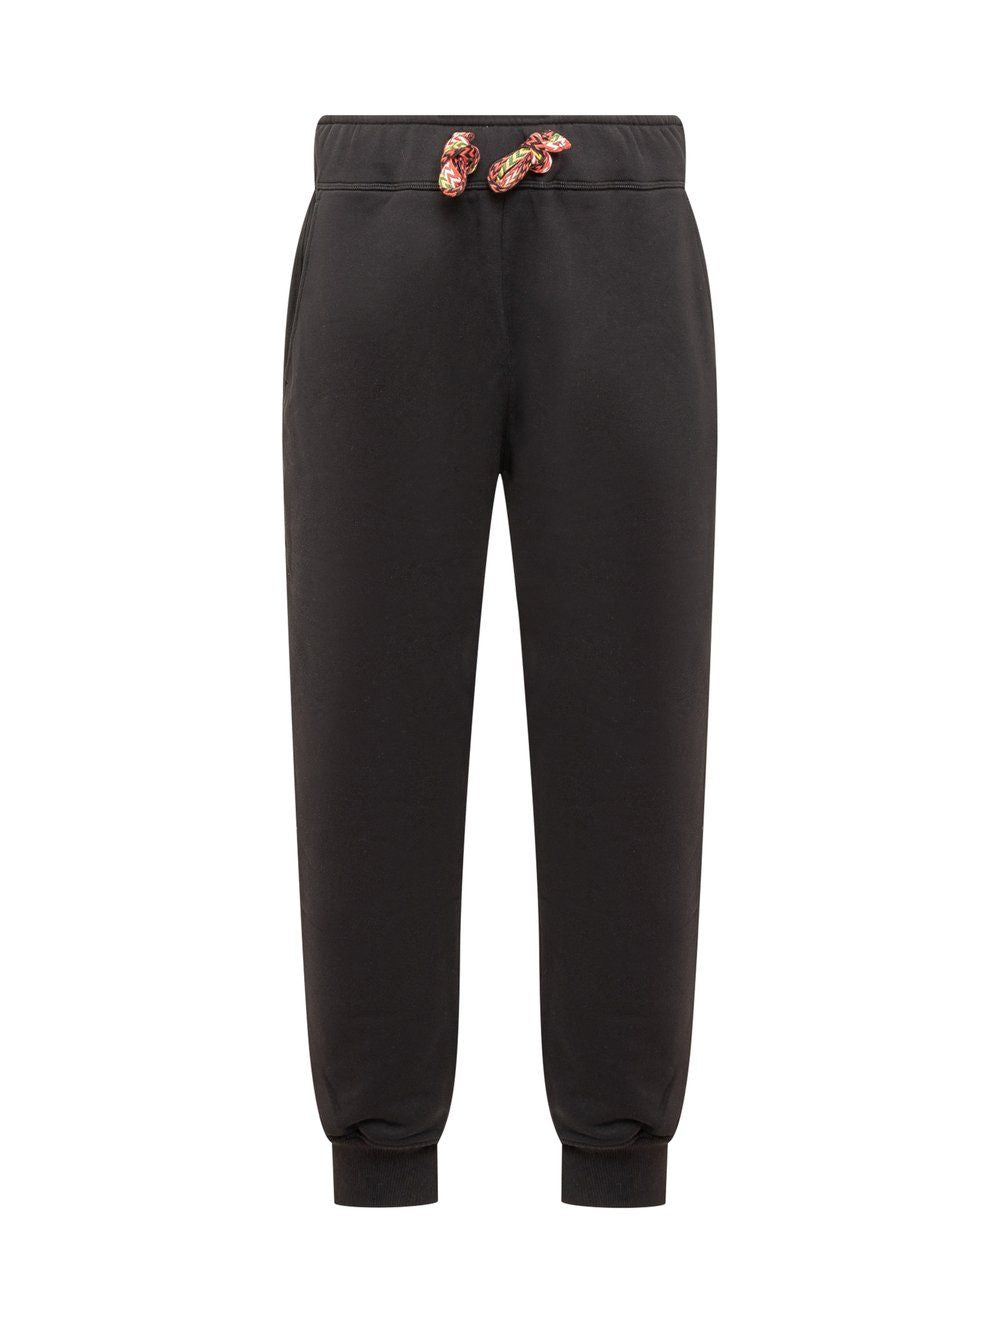 Sweatpants Curb Lace màu đen dành cho nam FW23